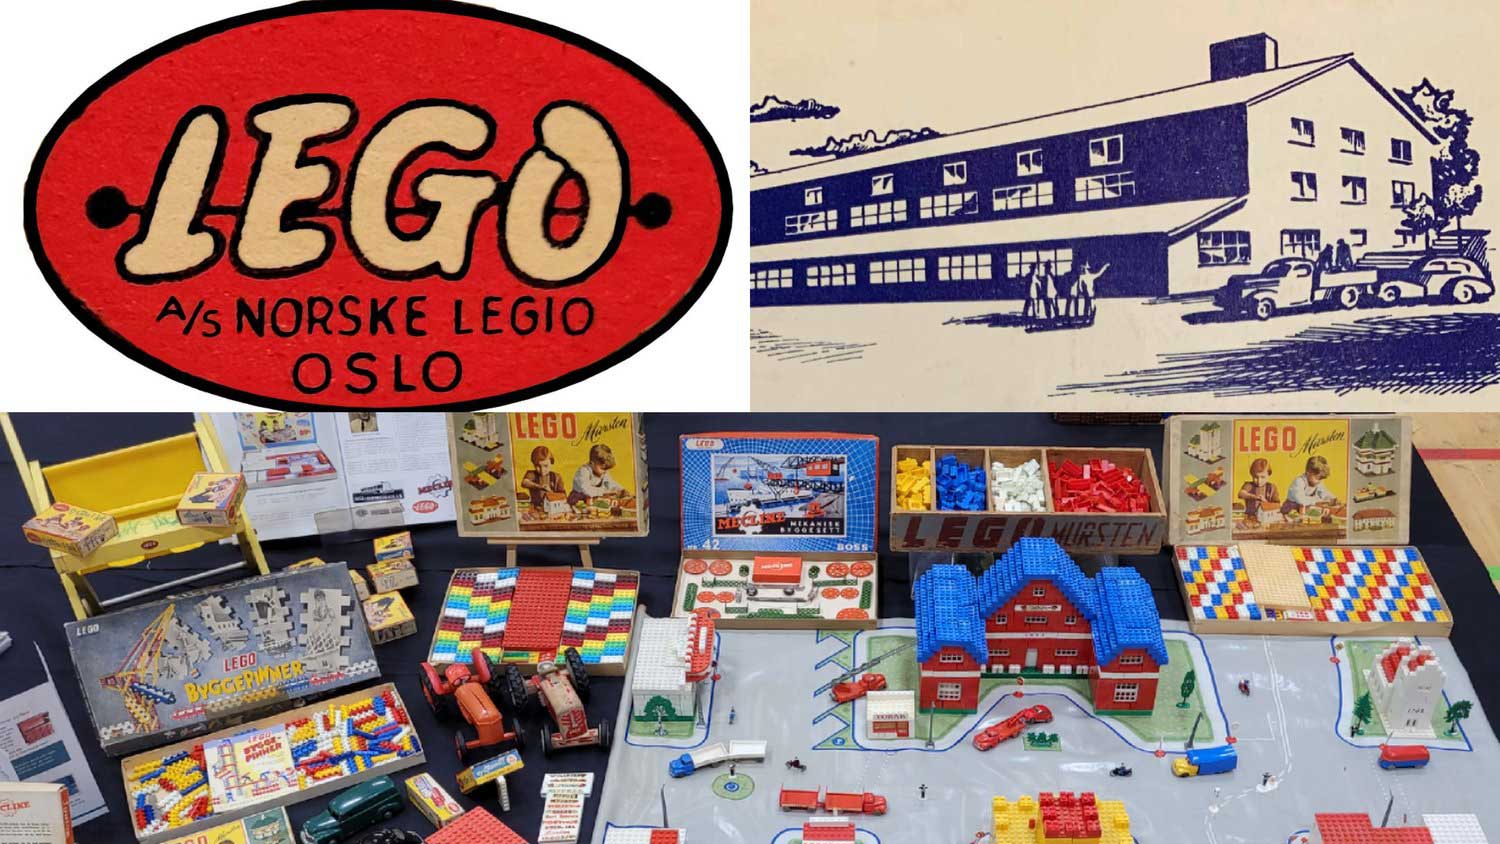 Den norske LEGO-logoen øverst til venstre, den norske fabrikken øverst til høyre og et utvalg av norskproduktet LEGO nederst.